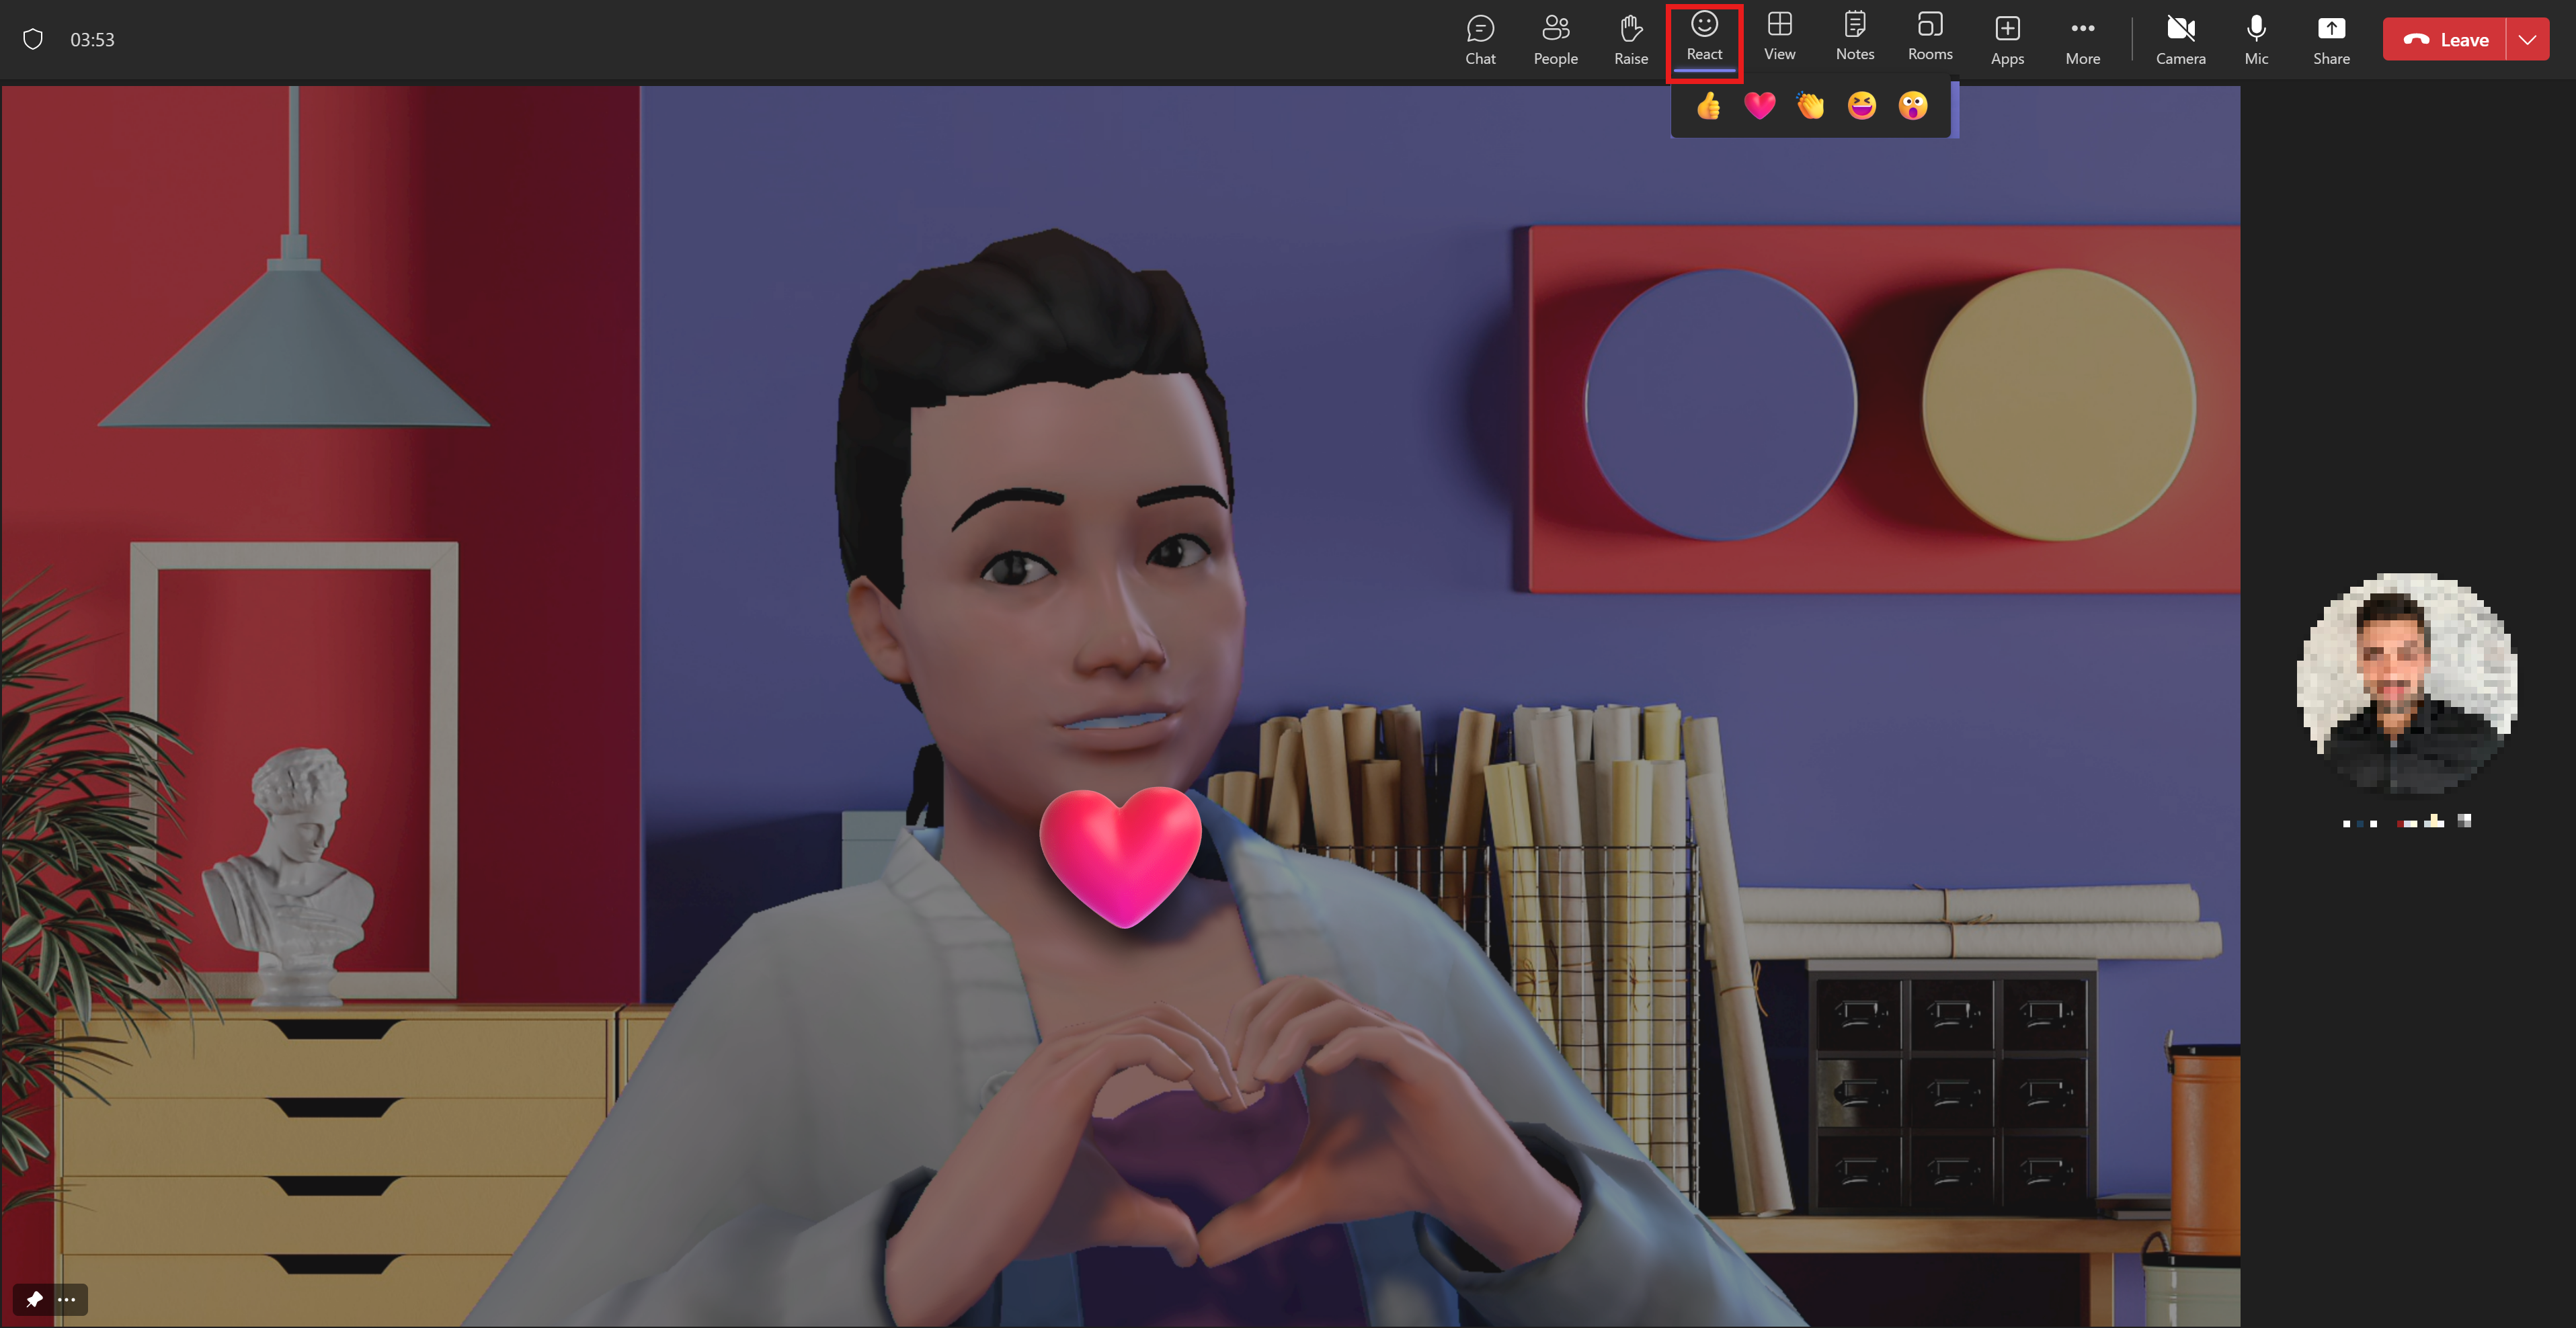 En avatar viser hendes kærlighed ved at gøre et hjerte med hænderne